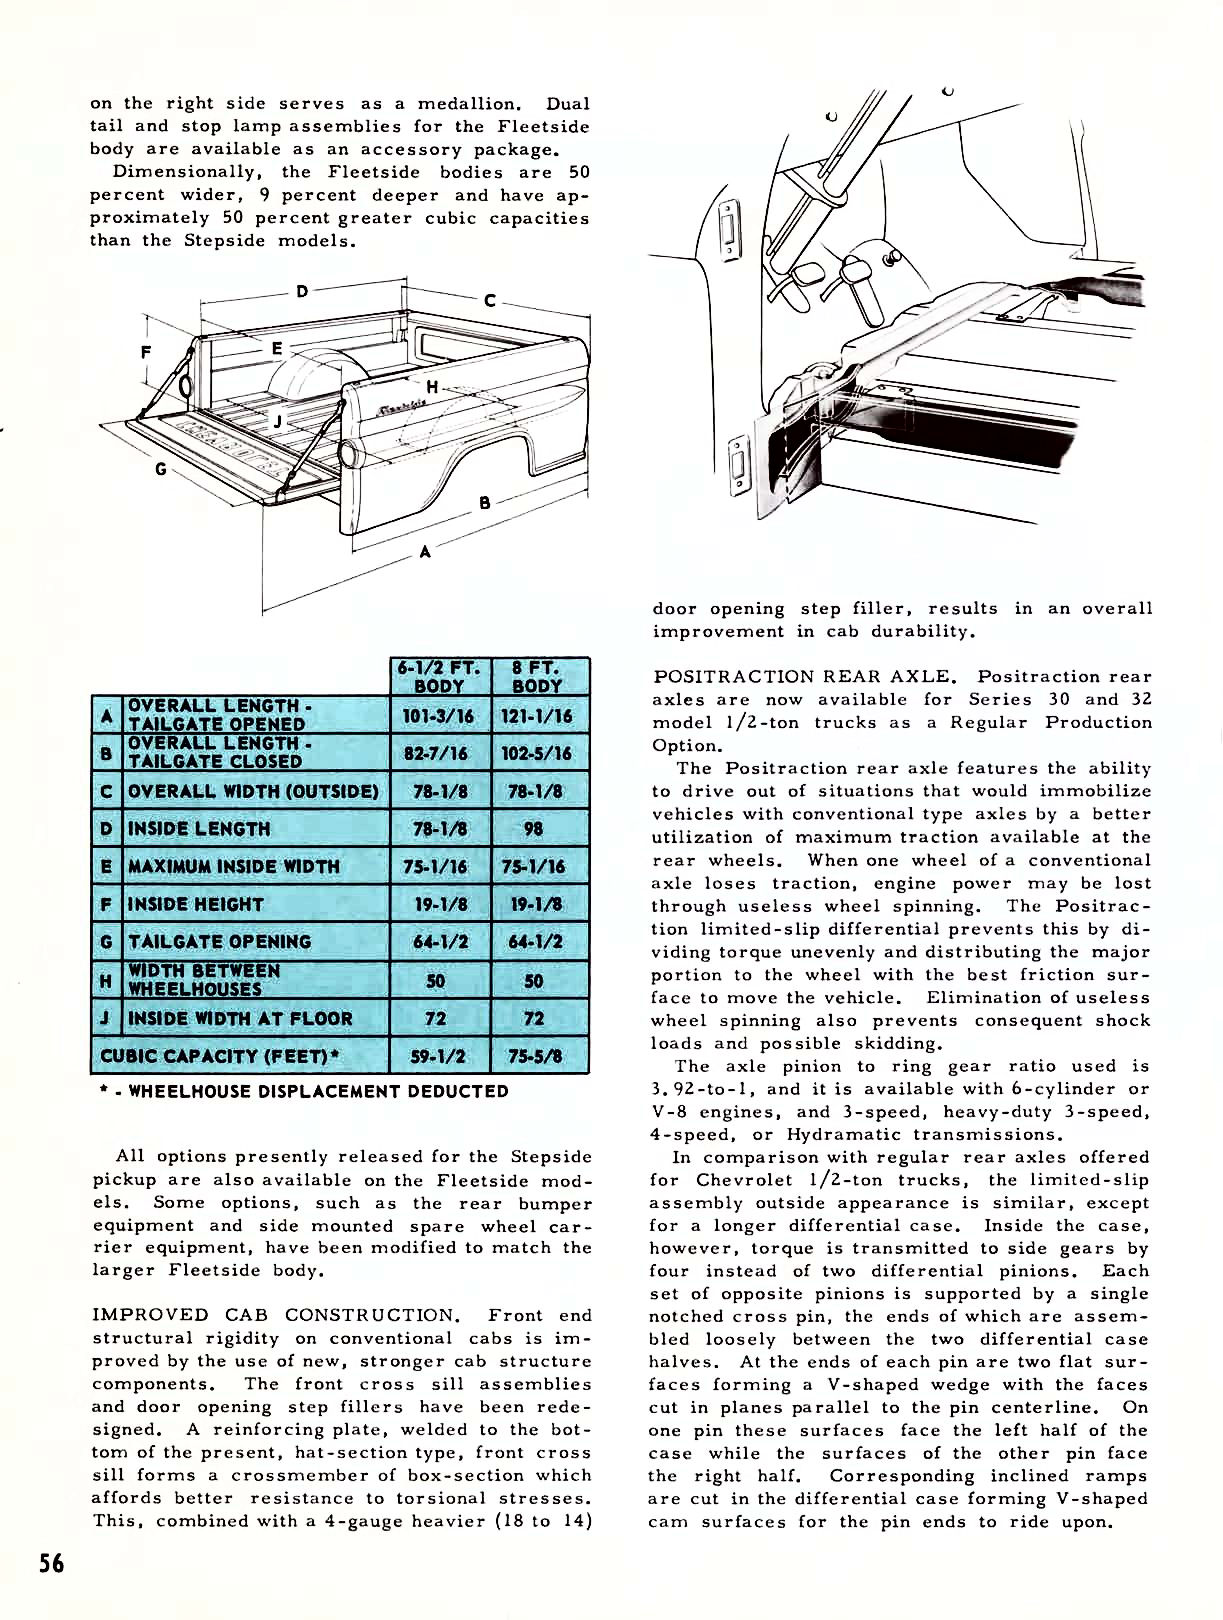 1959 Chevrolet Truck Engineering Features-56